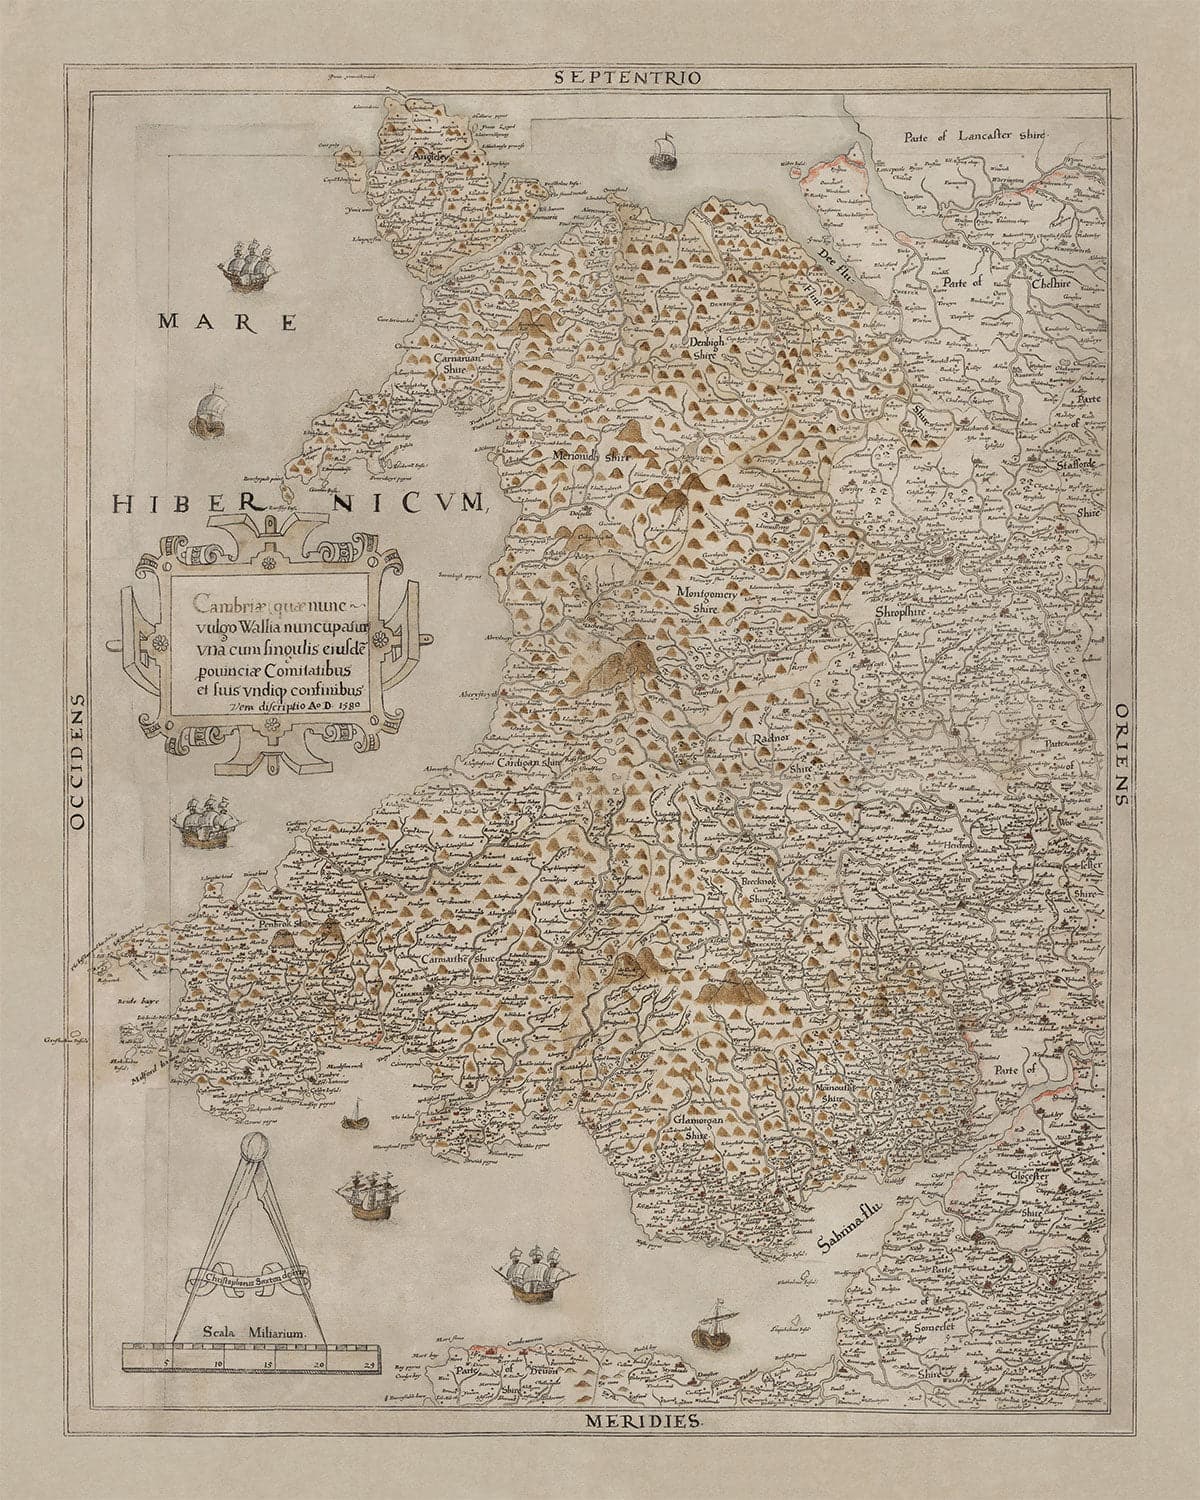 Alte Karte von Wales, Cymru von Christopher Saxton in 1580 - Erste genaue Karte von Wales